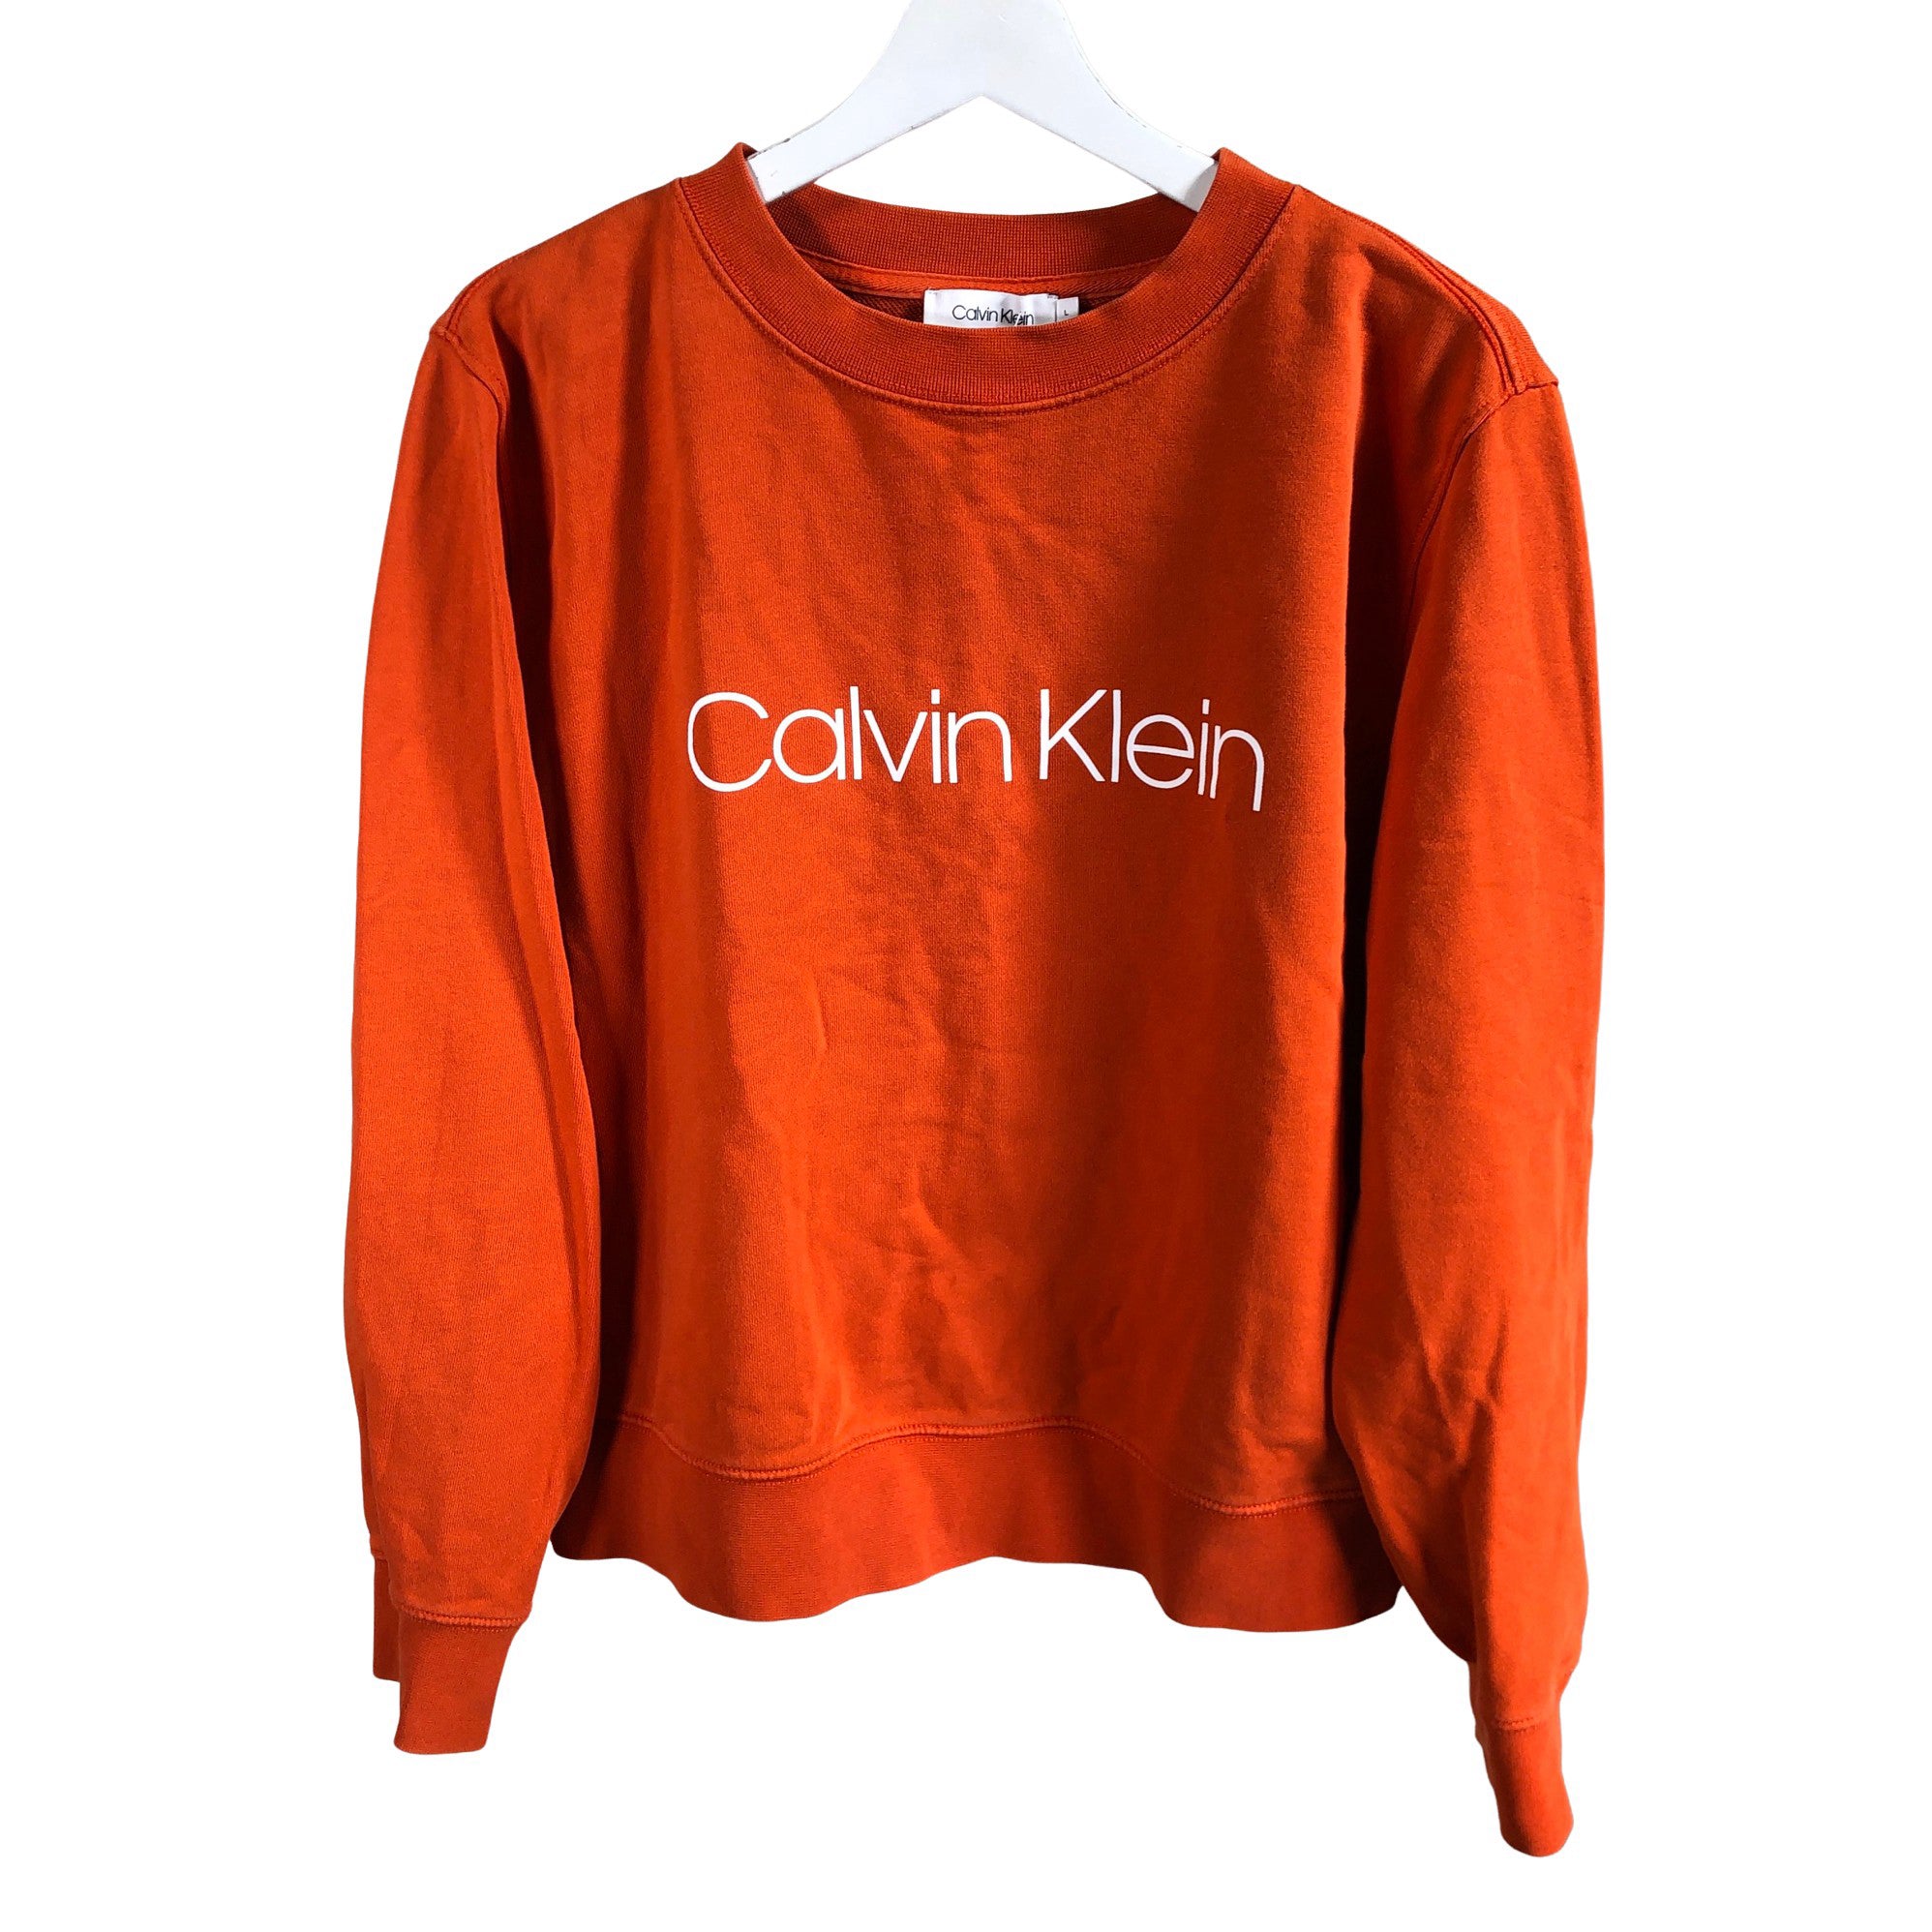 Women's Calvin Klein Sweatshirt, size 40 (Orange) | Emmy